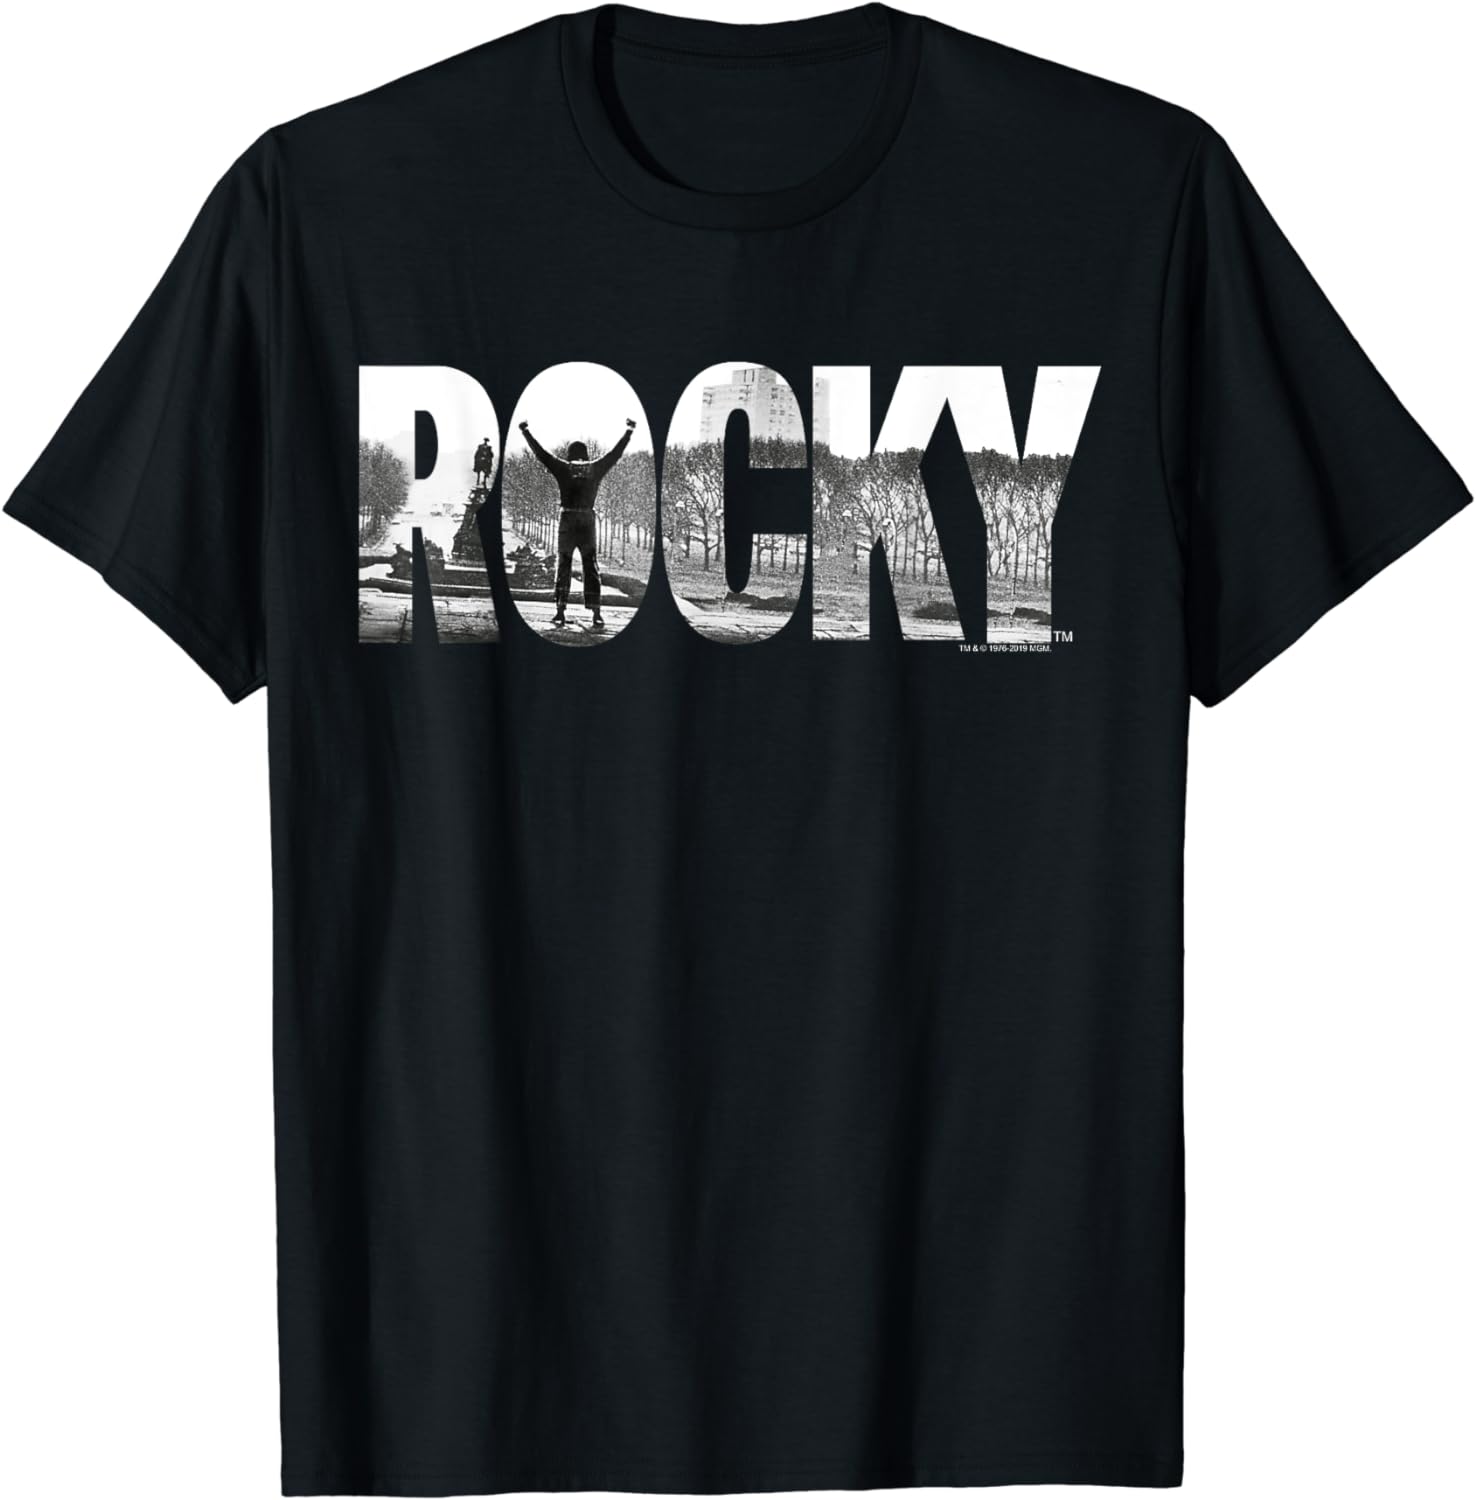 Rocky Black Classic Fit T-Shirt, Cotton Crew Neck, Adult Graphic Men's ...